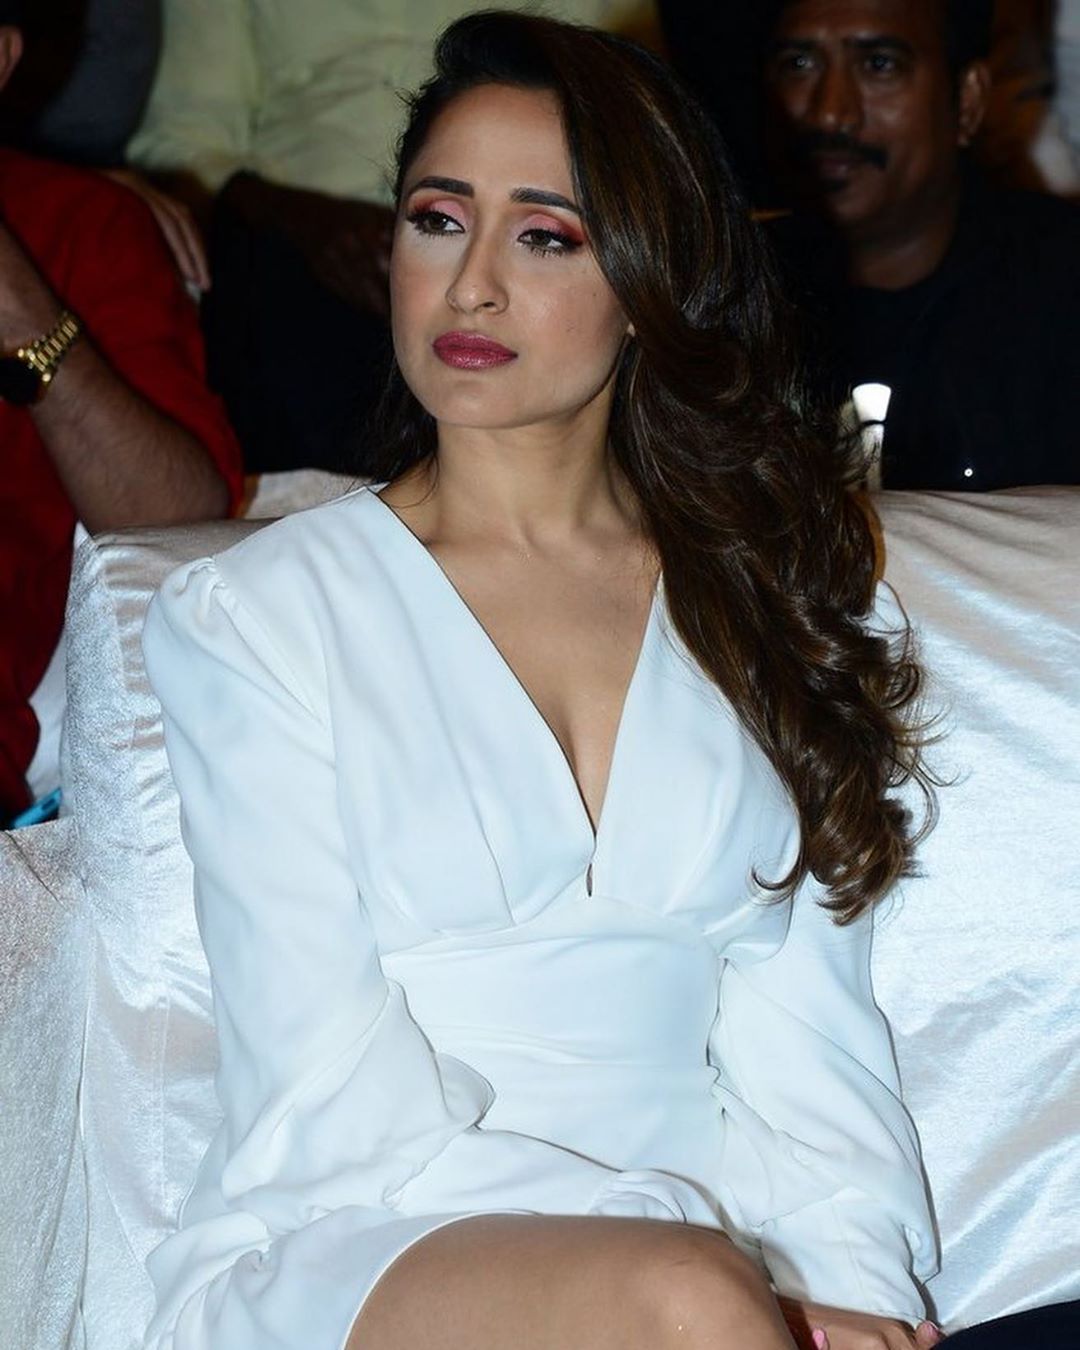 Pragya Jaiswal Looking Hot In White Bath Robe Look Like Dress